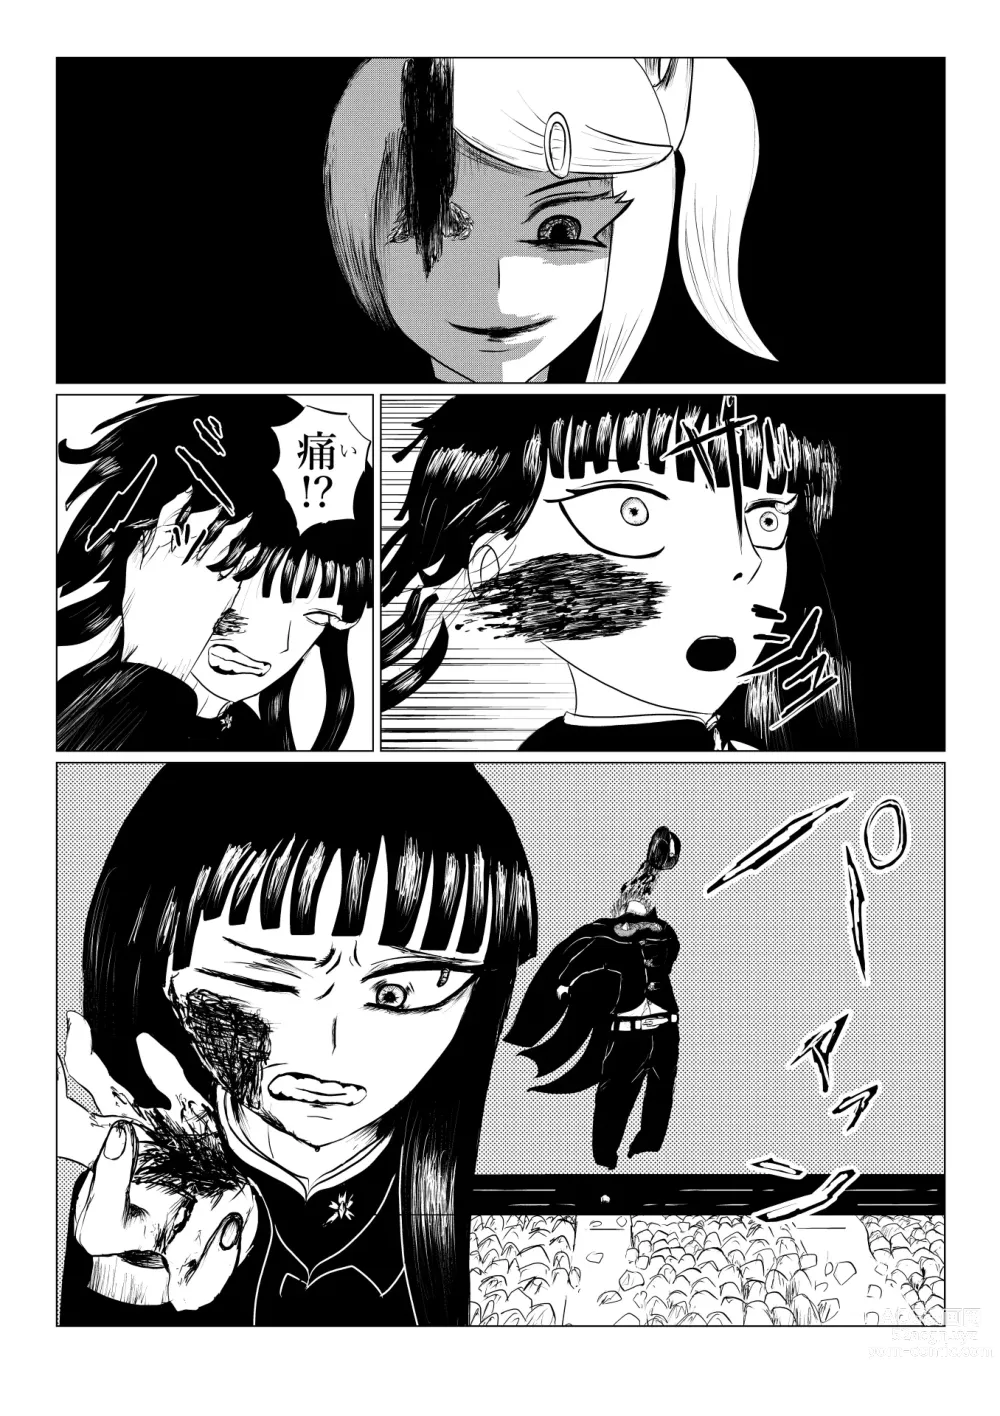 Page 211 of doujinshi HYPE-C Kutourufu Shinwa Musou Roku